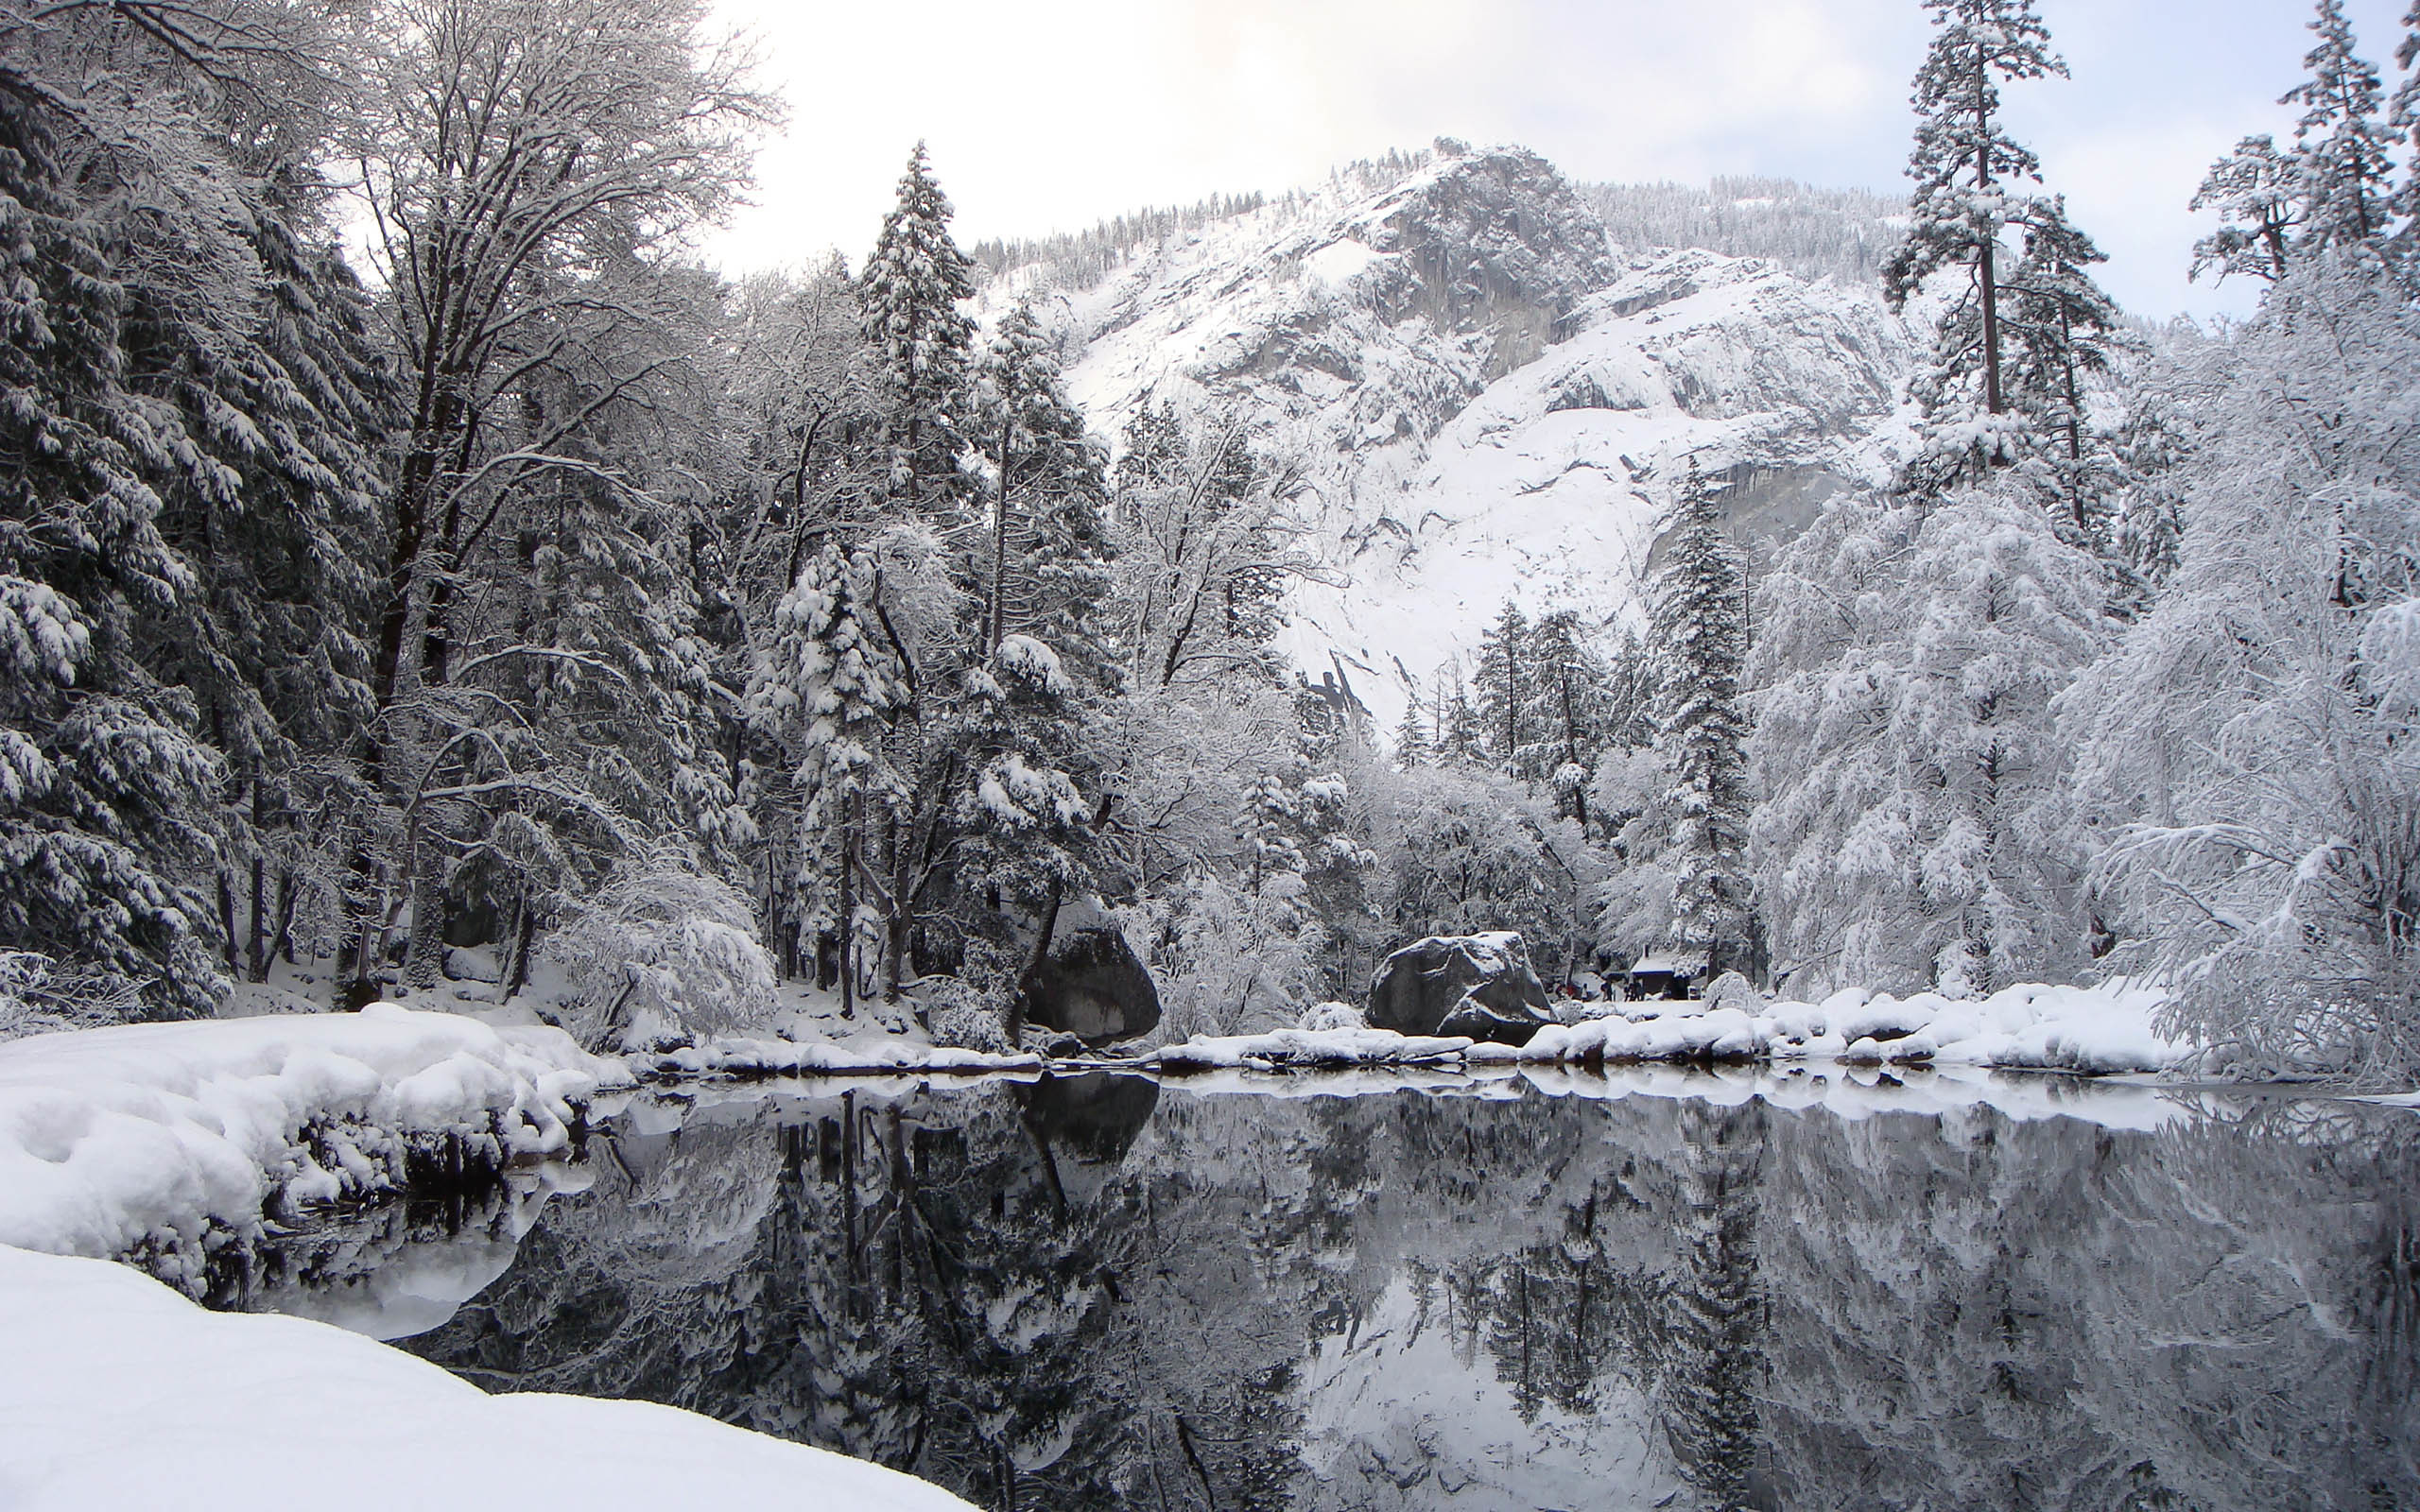 PCデスクトップに山脈, 湖, 風景画像を無料でダウンロード